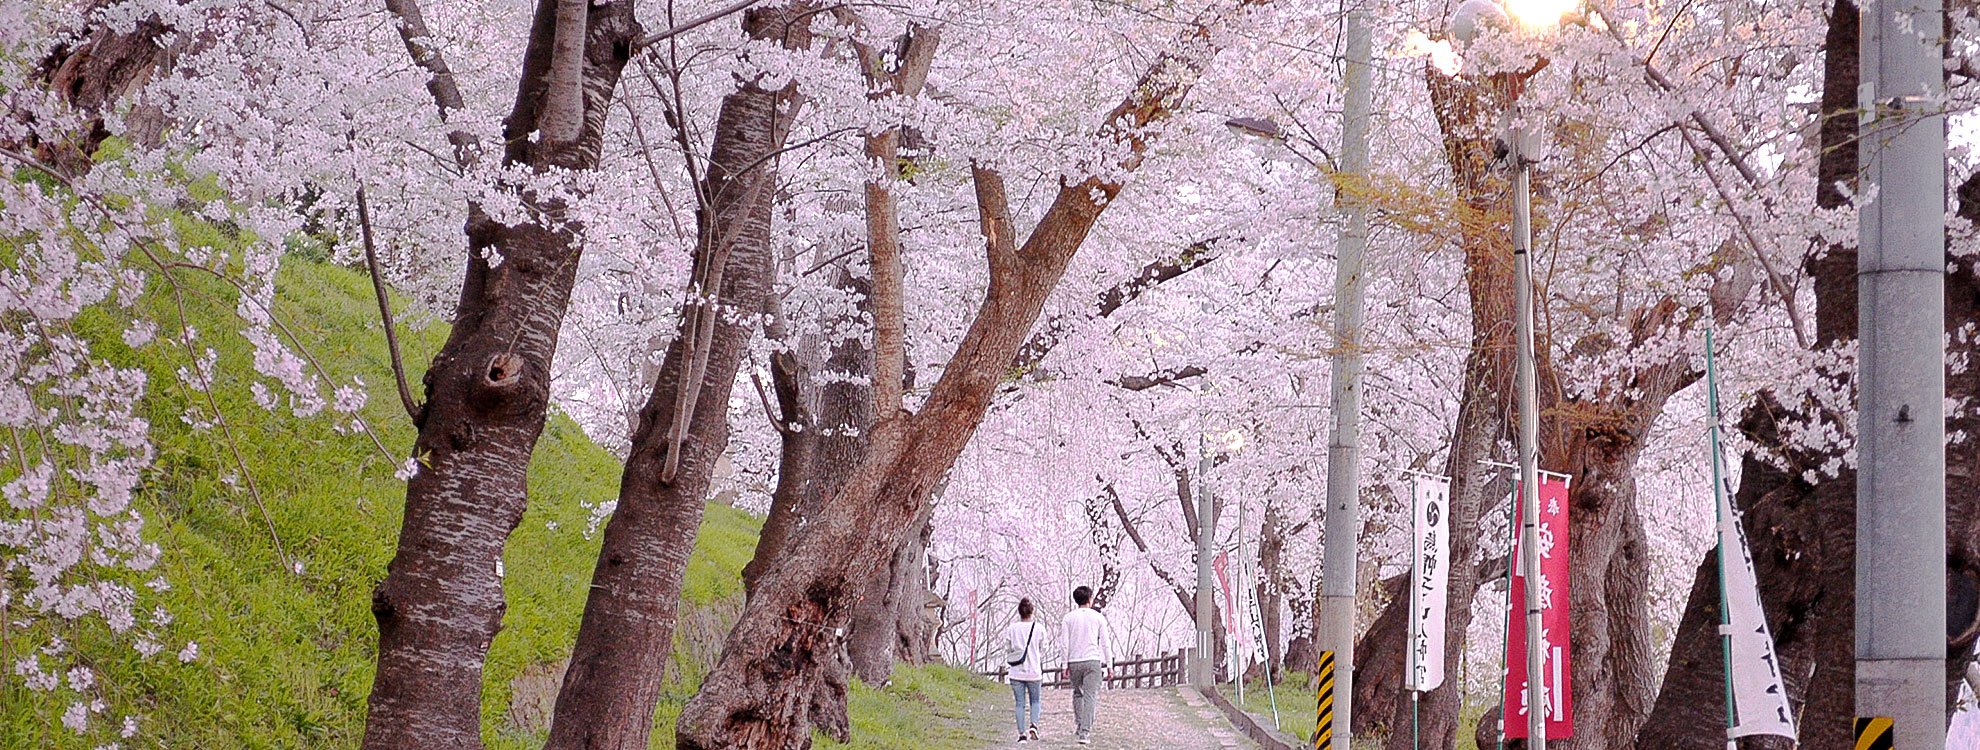 桜の名所 烏帽子山公園